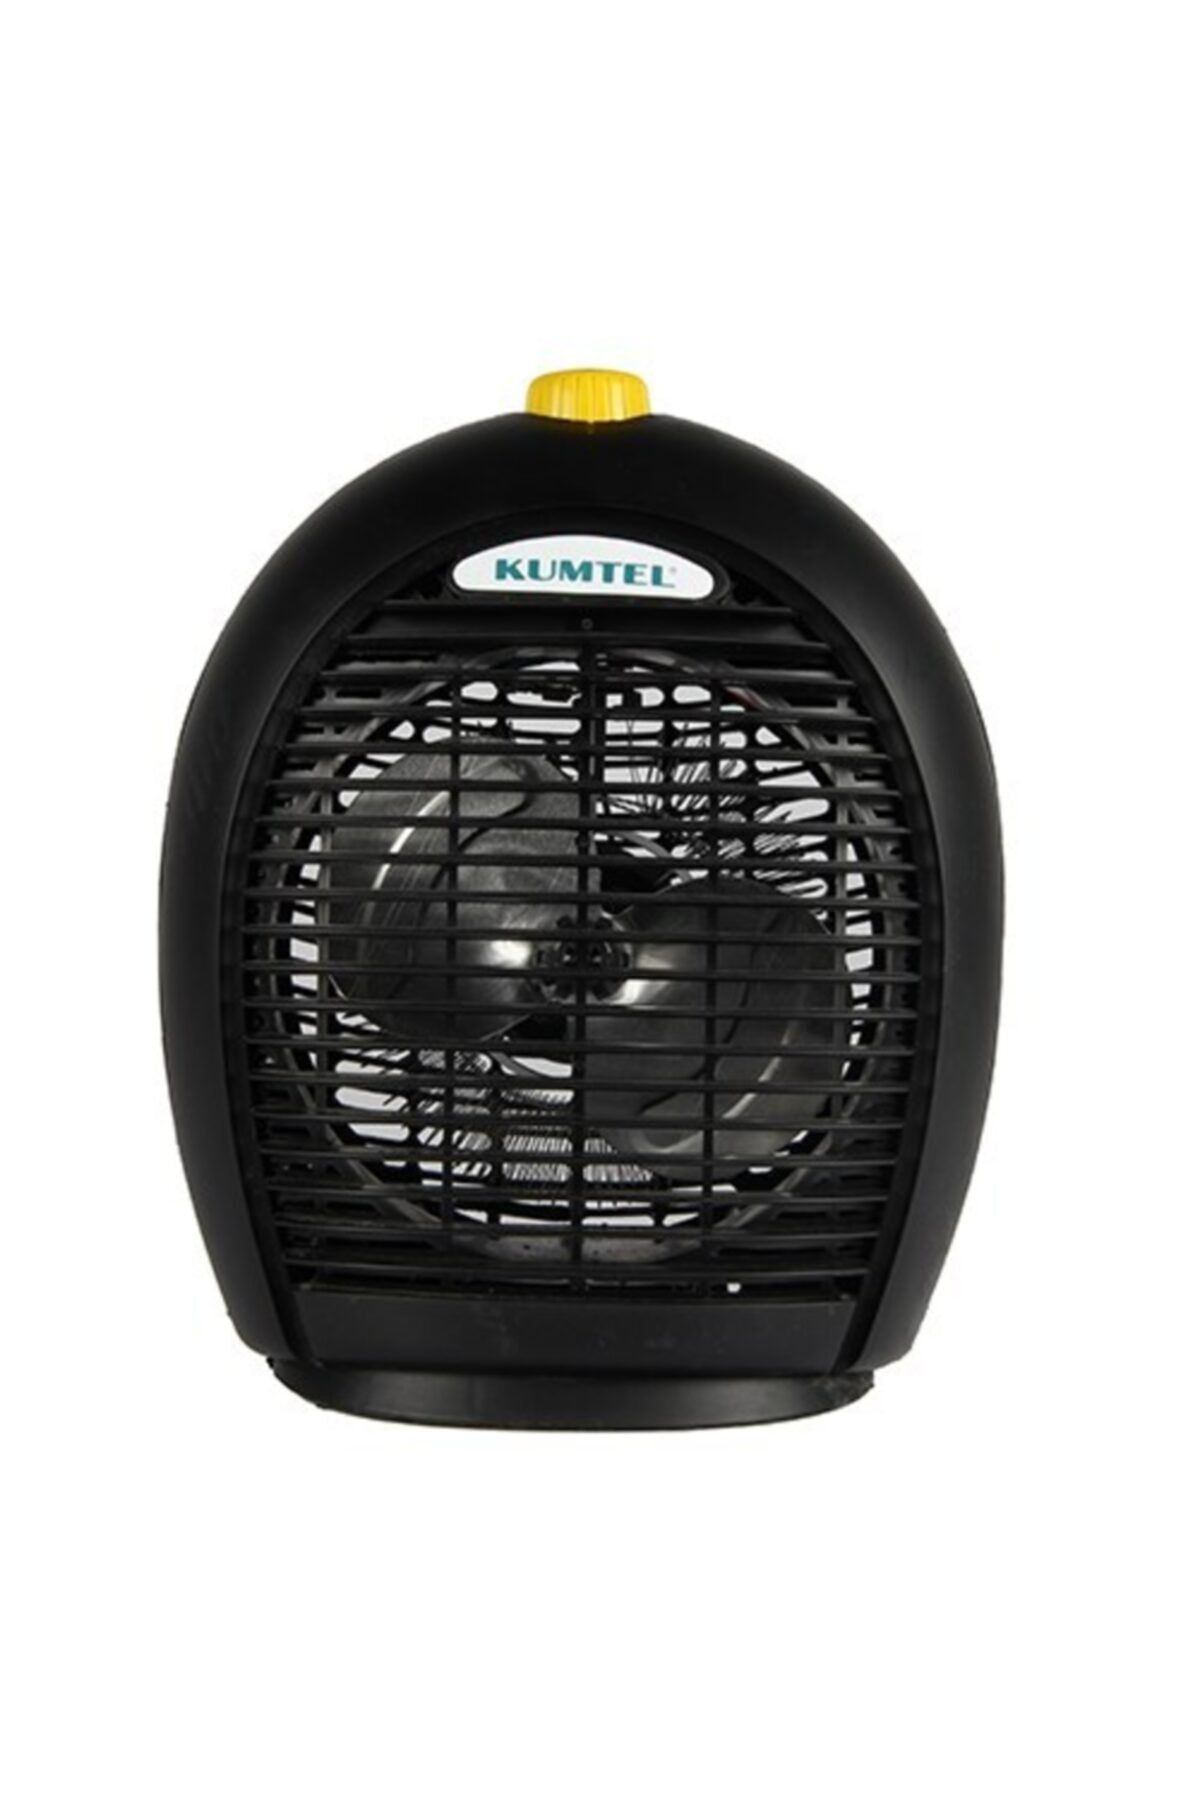 KUMTEL Lx-6331 Elektrikli Fanlı Isıtıcı (sıcak & Soğuk Fan)